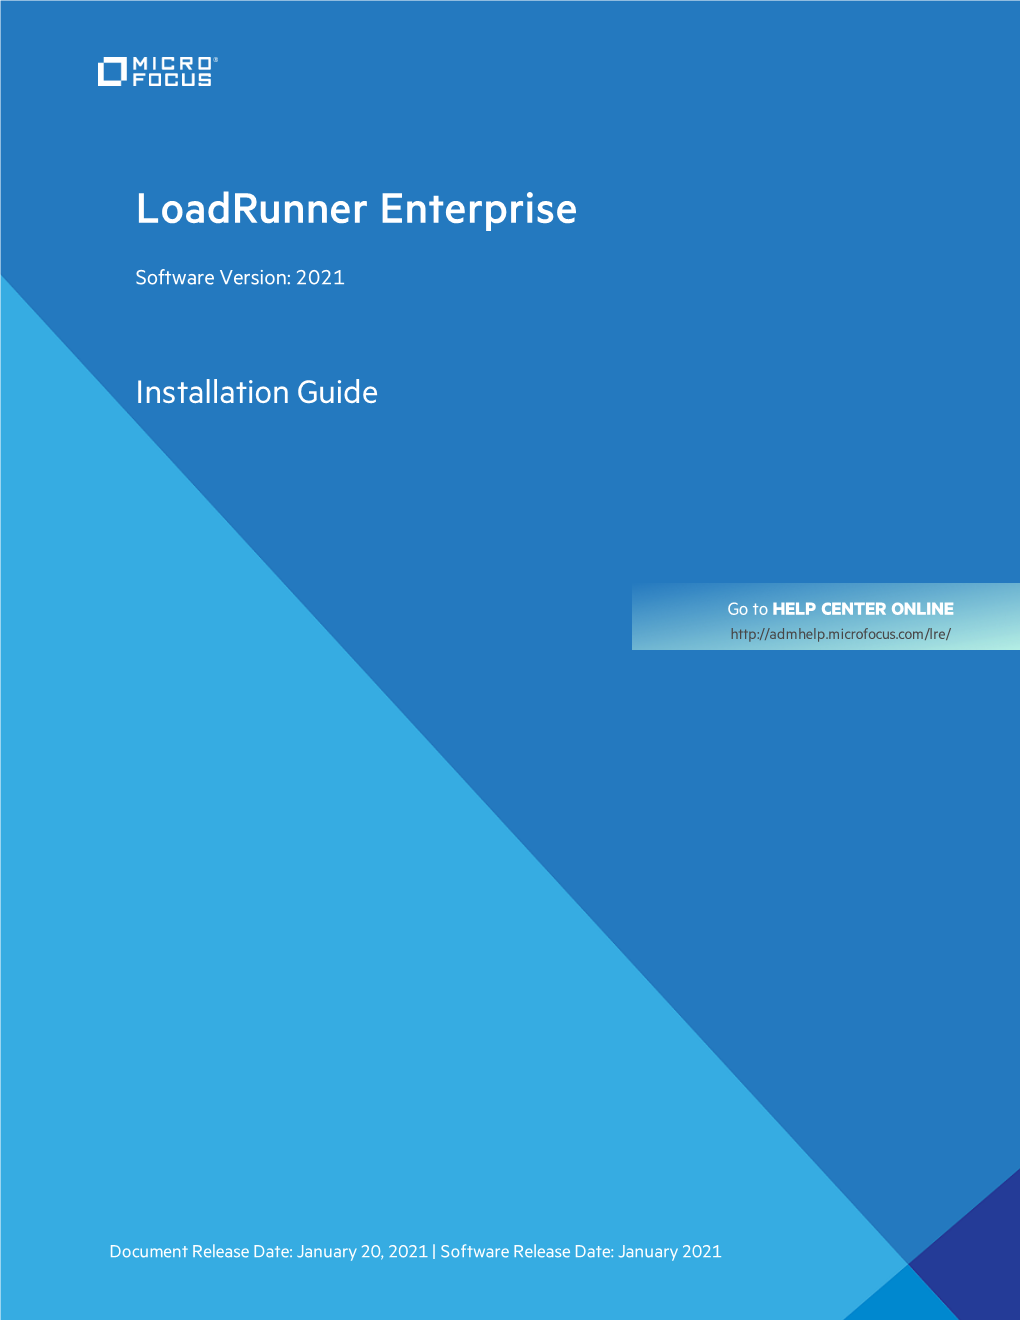 Loadrunner Enterprise Installation Guide